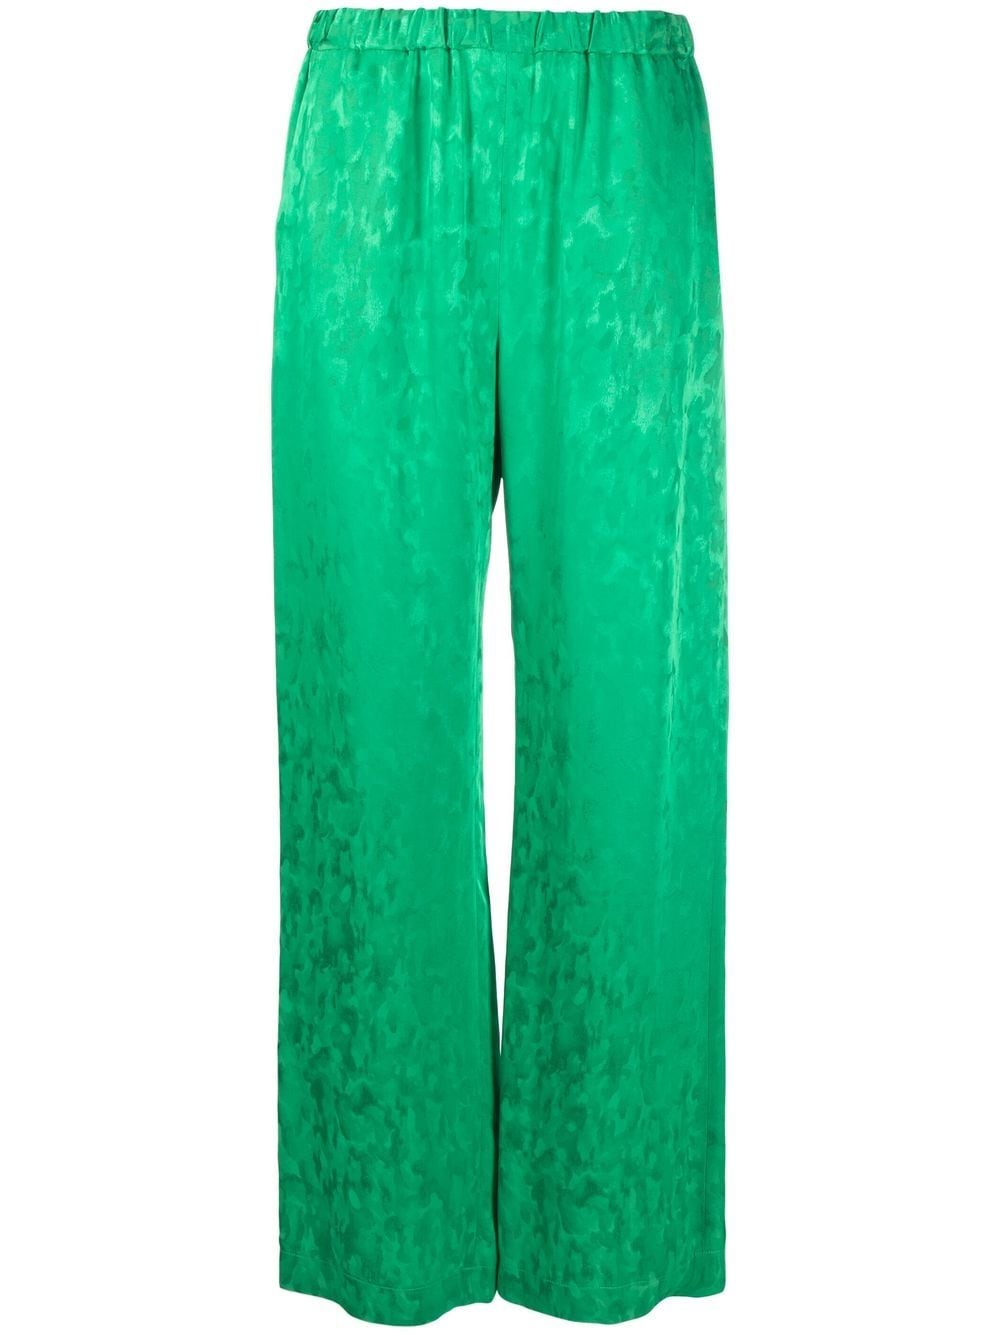 Green jacquard satin palazzo pants